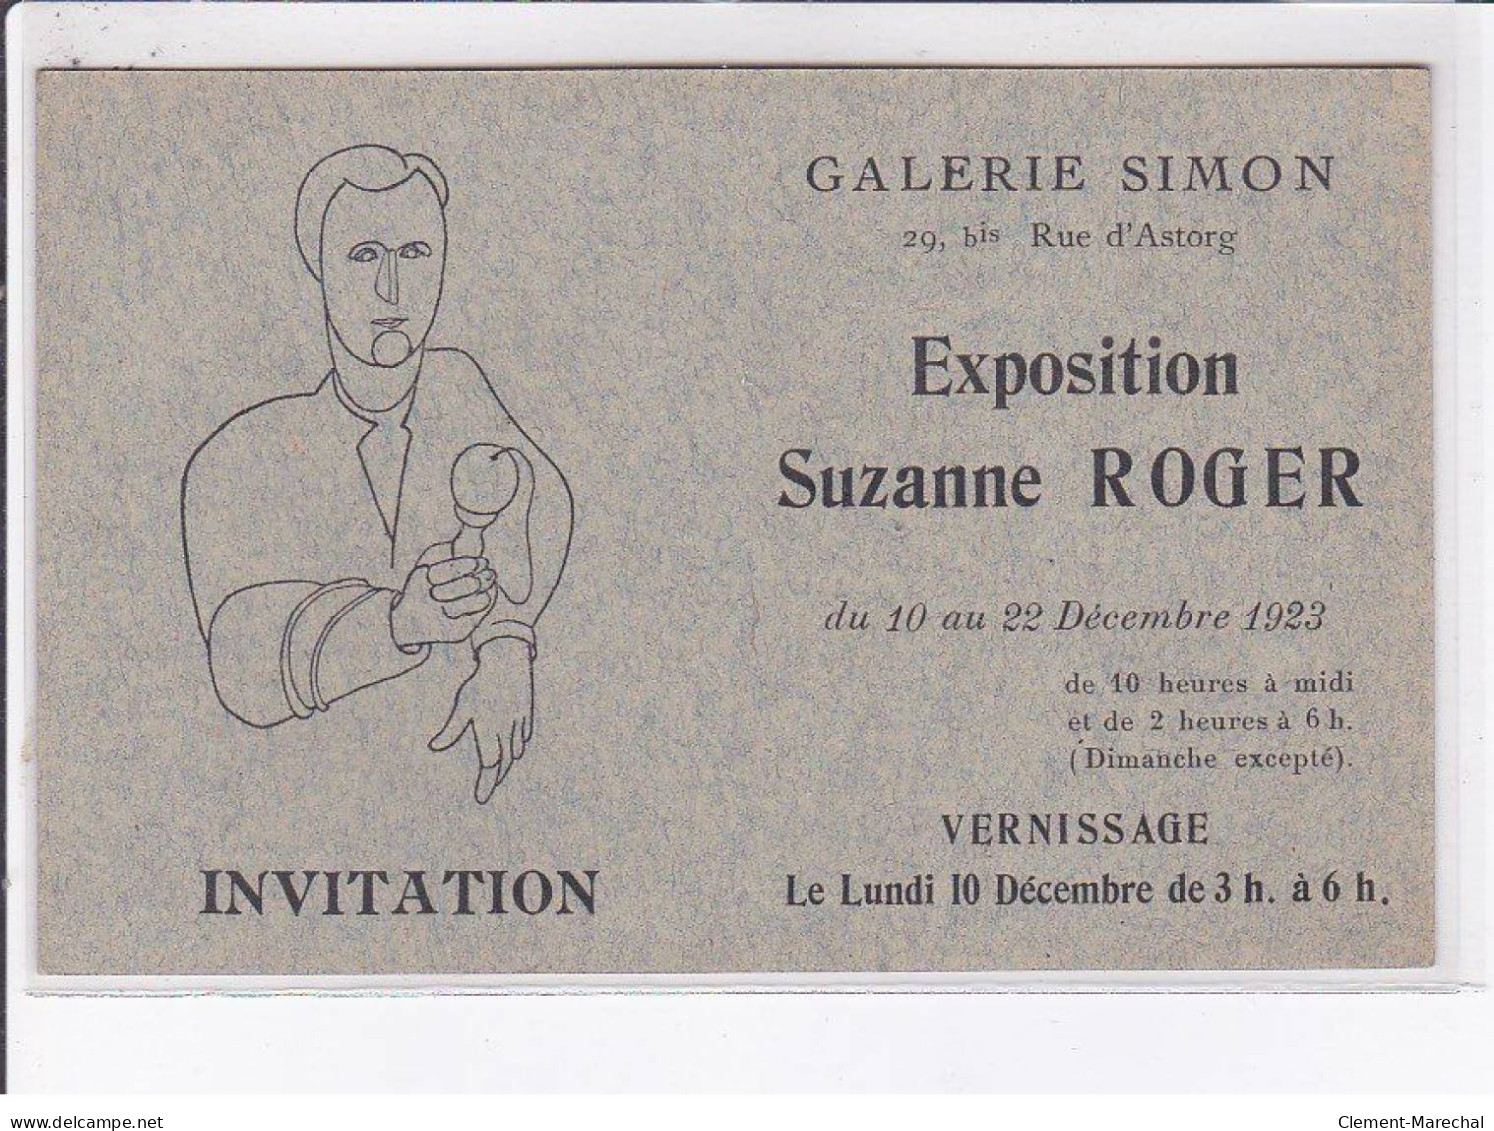 PUBLICITE: Invitation, Galerie Simon, Exposition Suzanne Roger, Vernissage - Très Bon état - Reclame